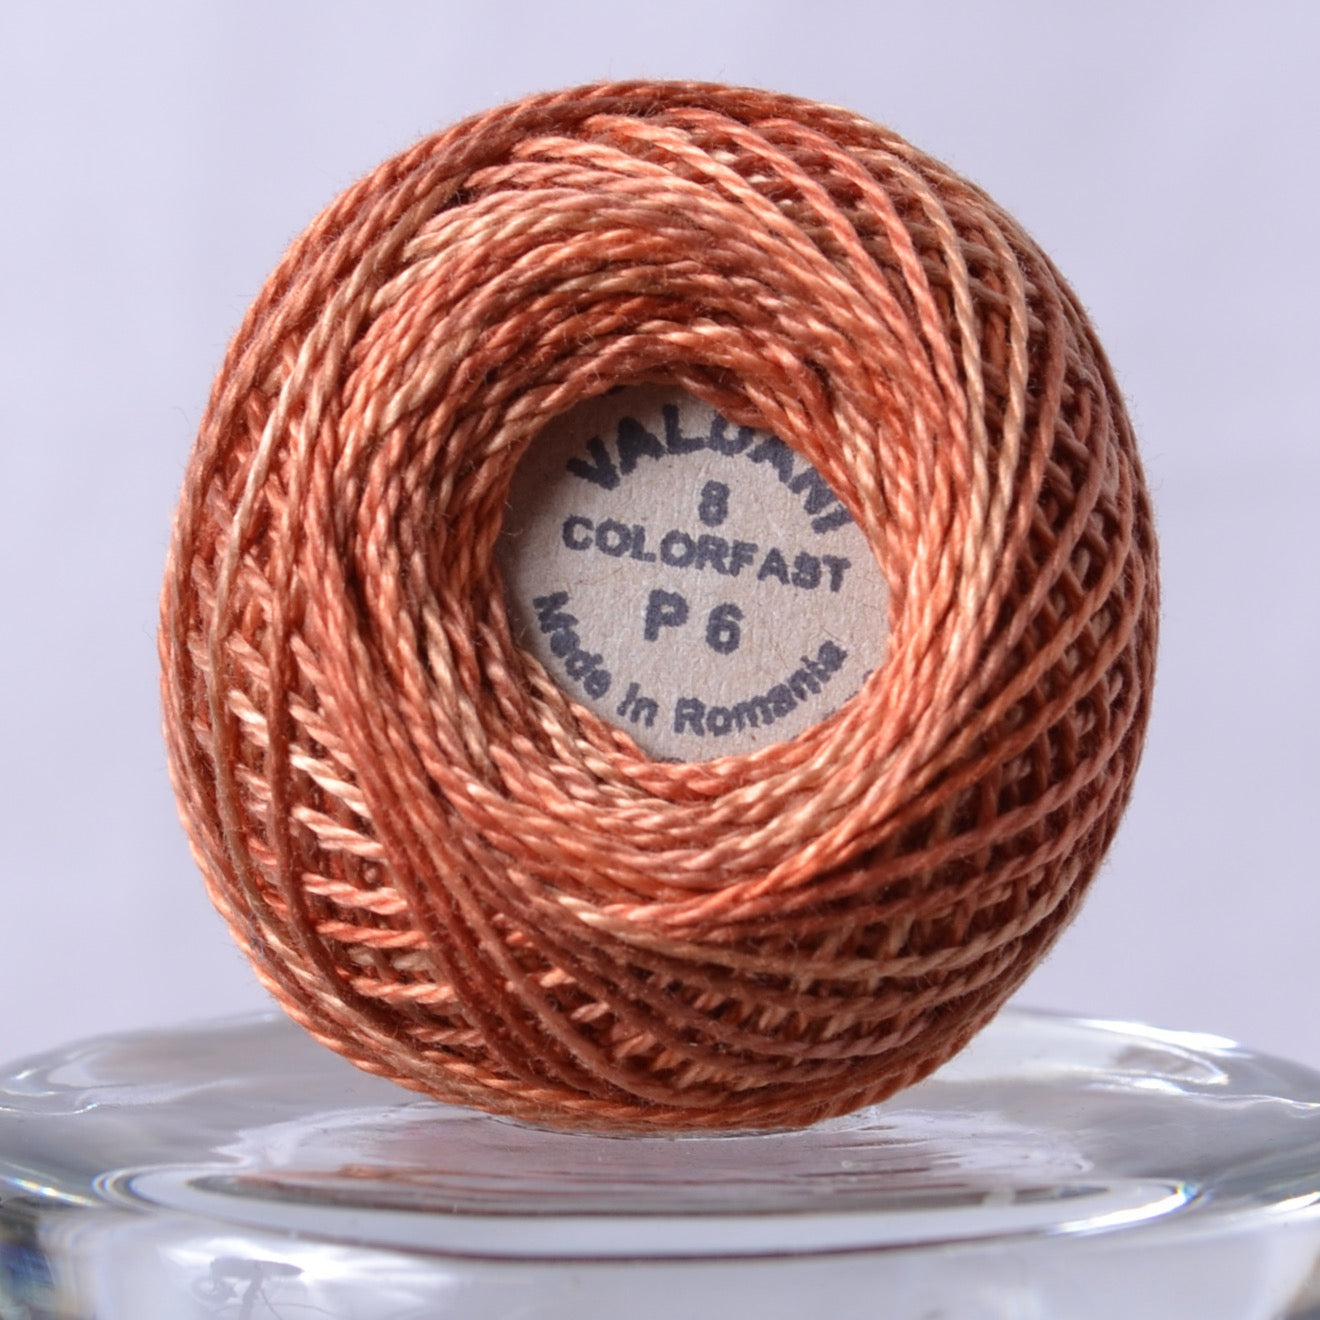 Valdani perle cotton thread